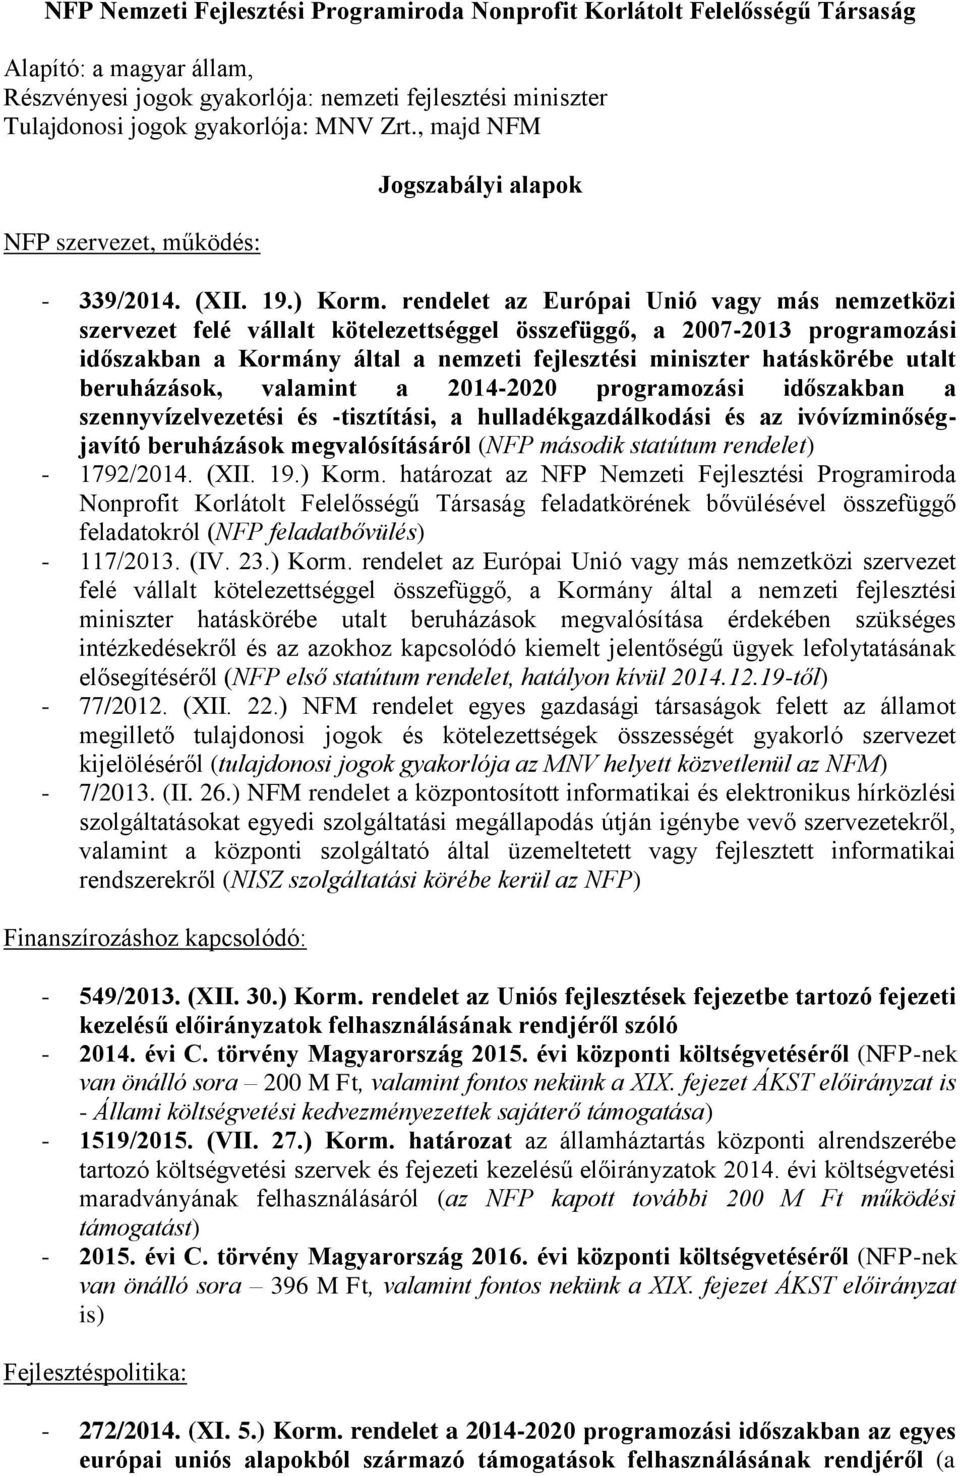 rendelet az Európai Unió vagy más nemzetközi szervezet felé vállalt kötelezettséggel összefüggő, a 2007-2013 programozási időszakban a Kormány által a nemzeti fejlesztési miniszter hatáskörébe utalt